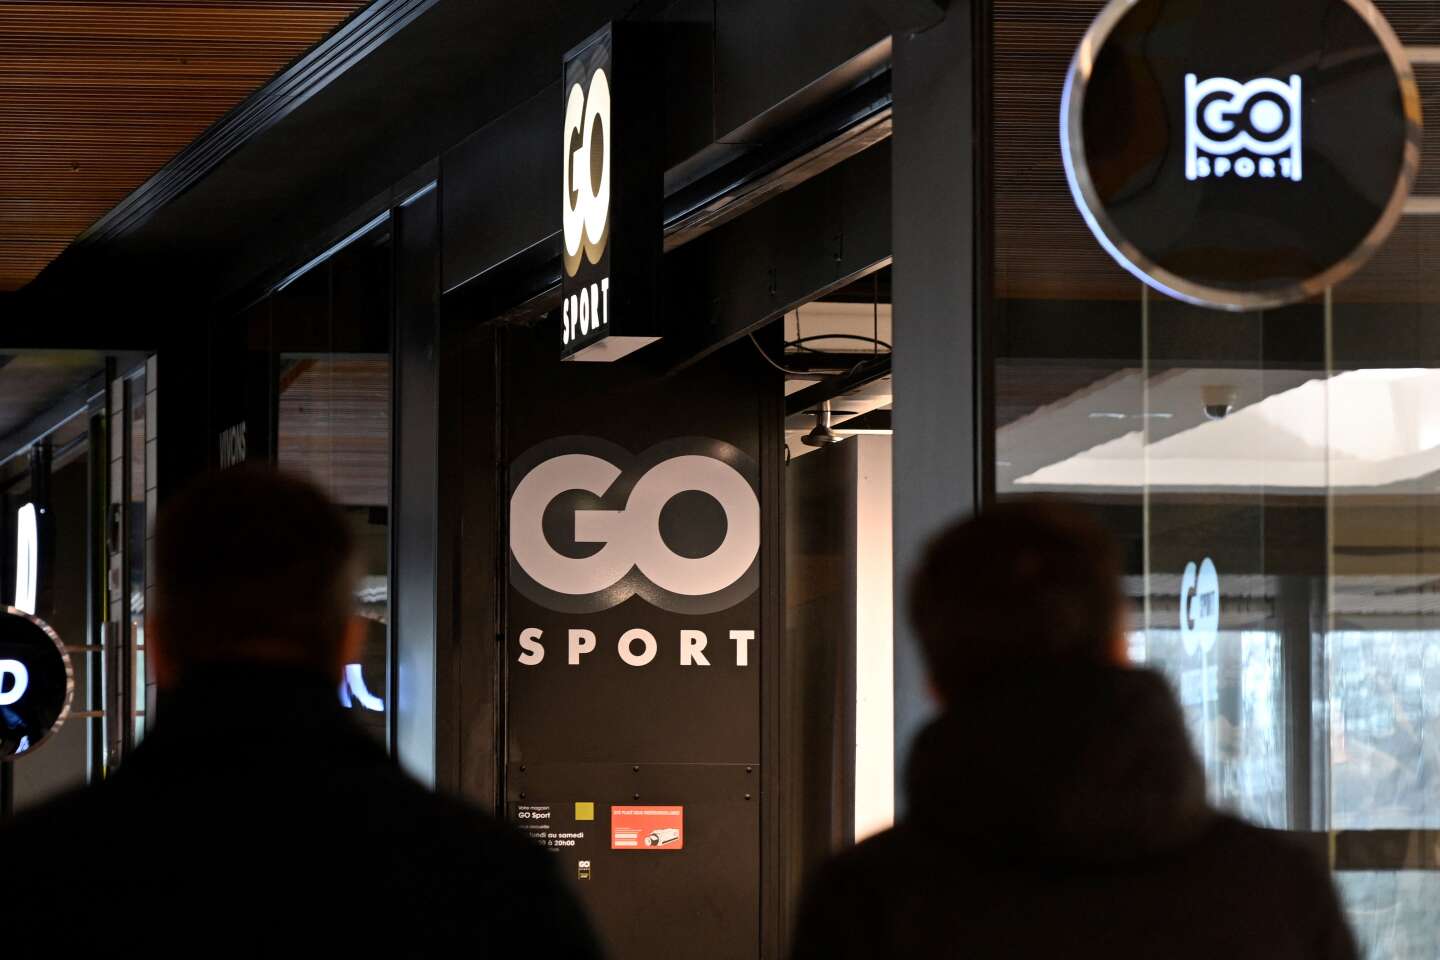 Go Sport : le britannique Frasers espère l’emporter face à Intersport